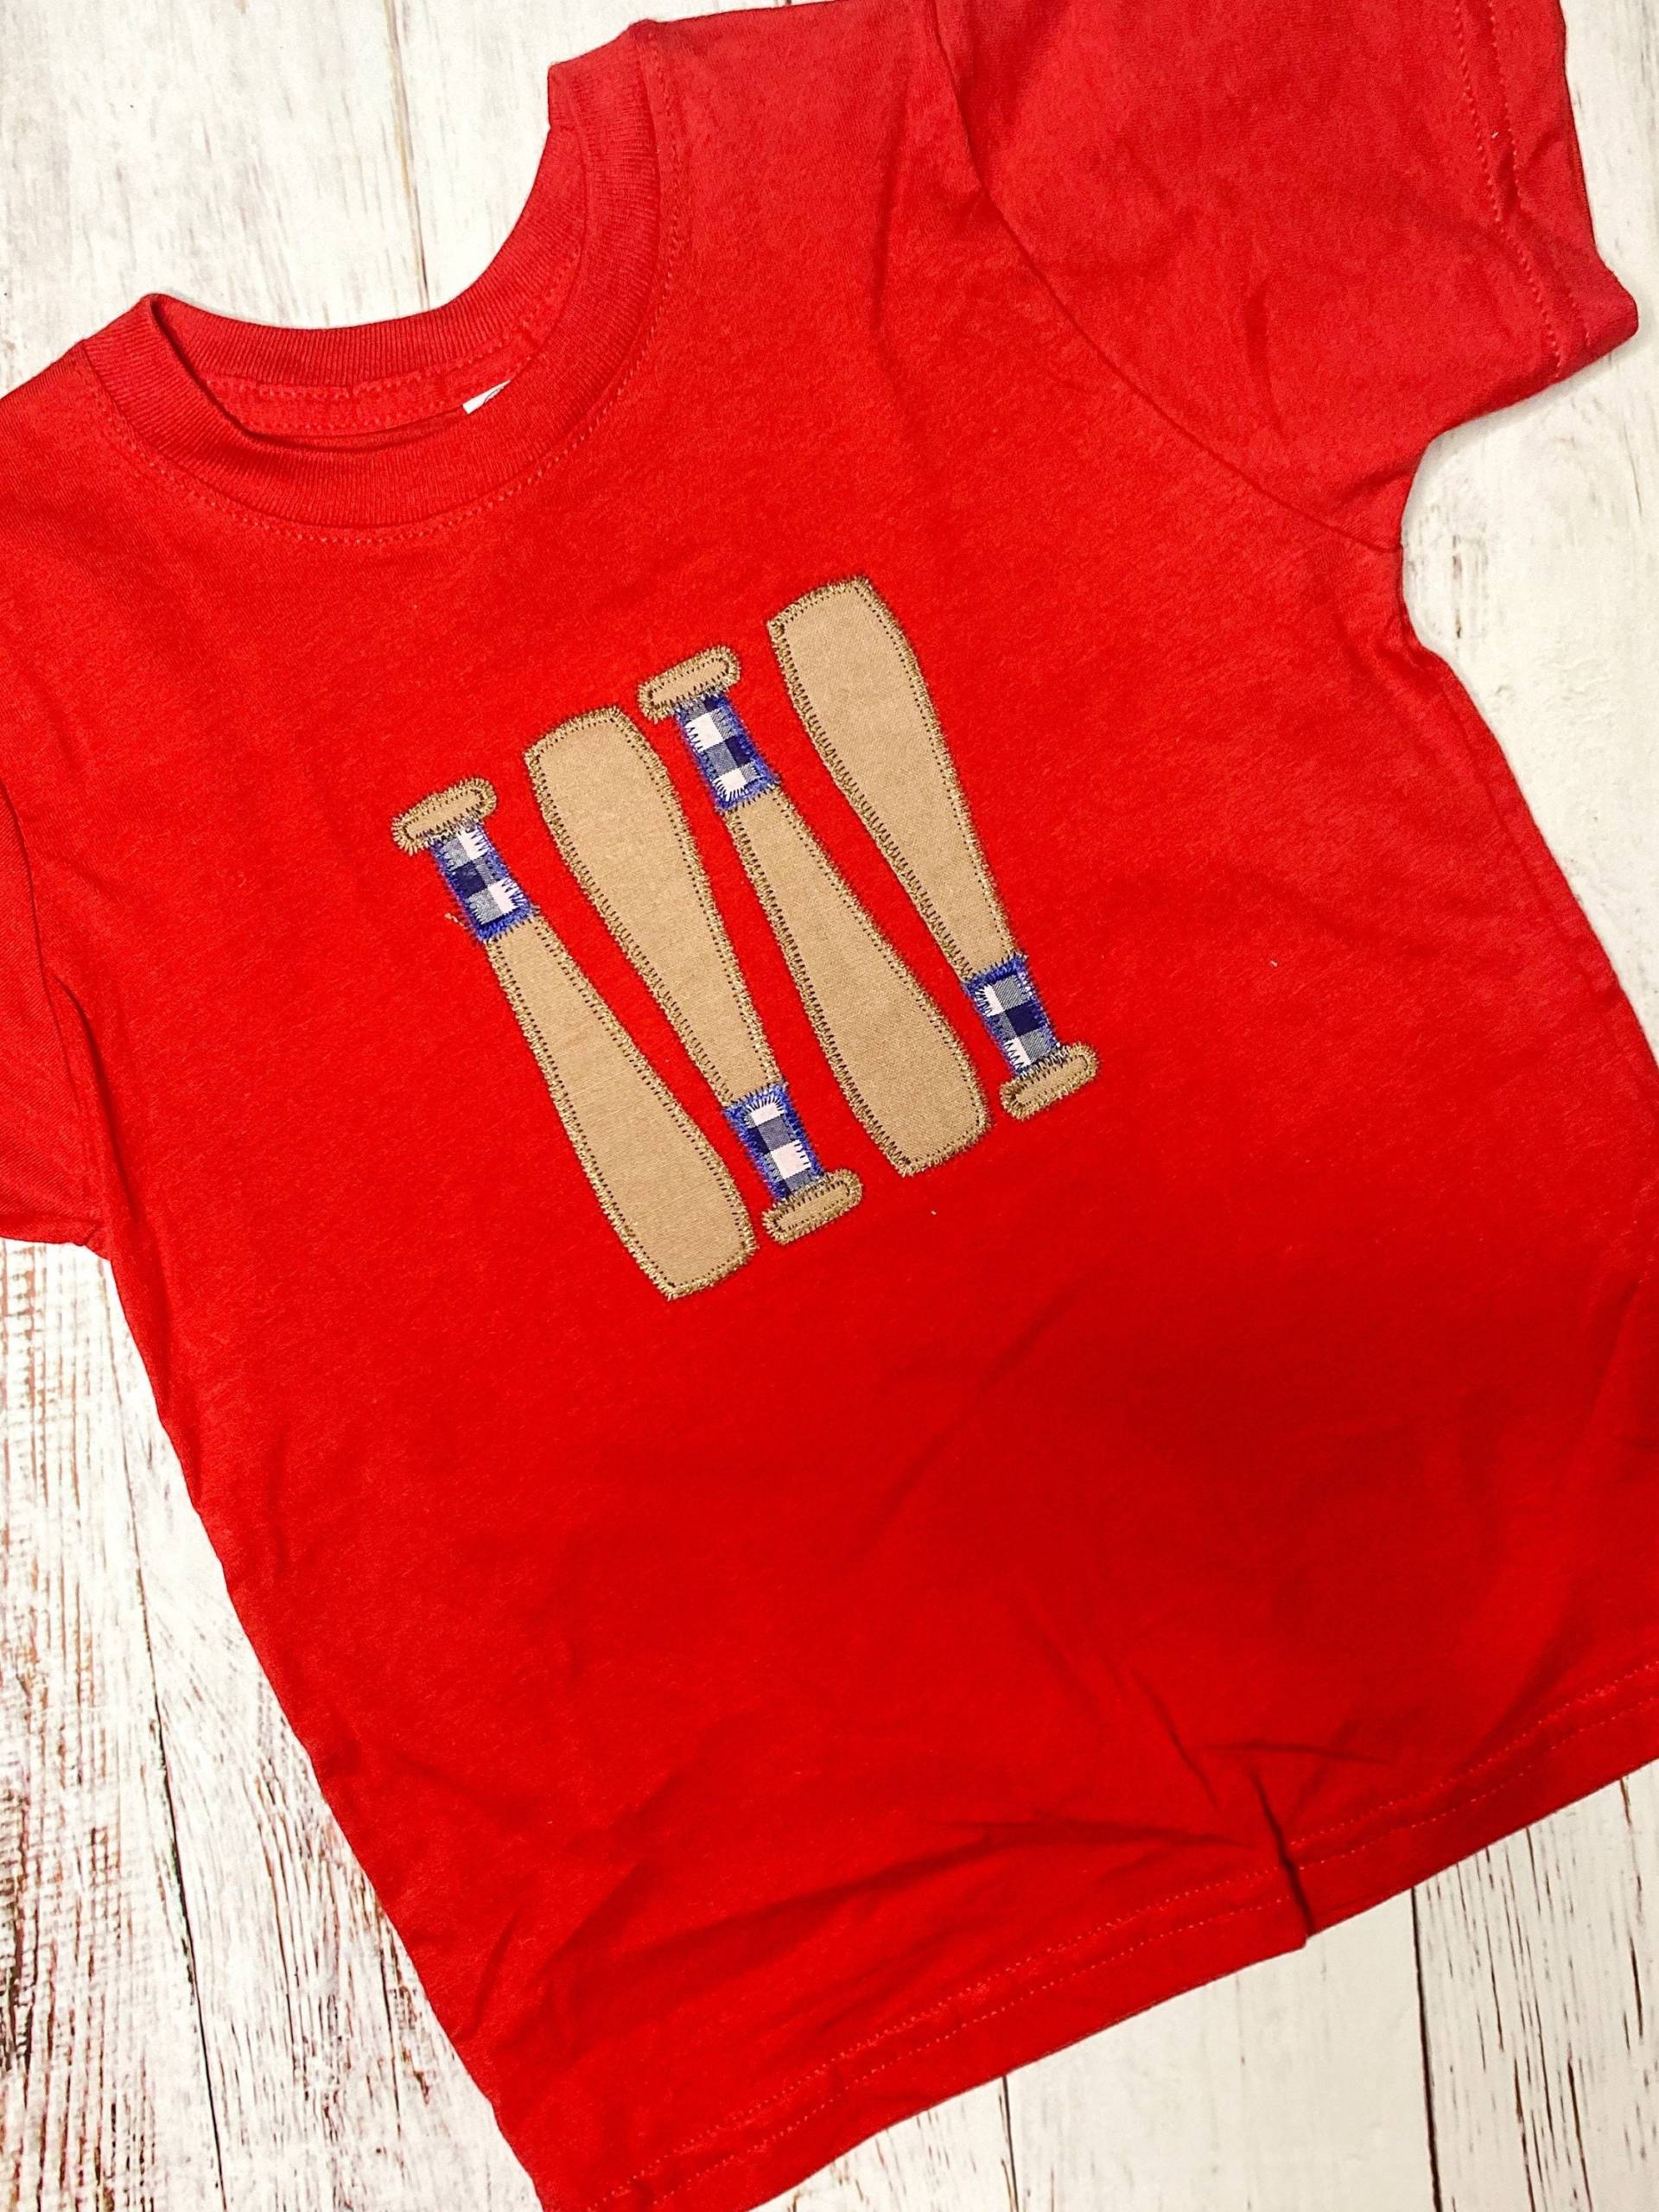 Baseball Schläger Top, Kleinkind Shirt Für Jungen Und Mädchen, Gamedat Top Baby Oder Kleinkind, Mädchen Sport Tshirt von ReaReaJs